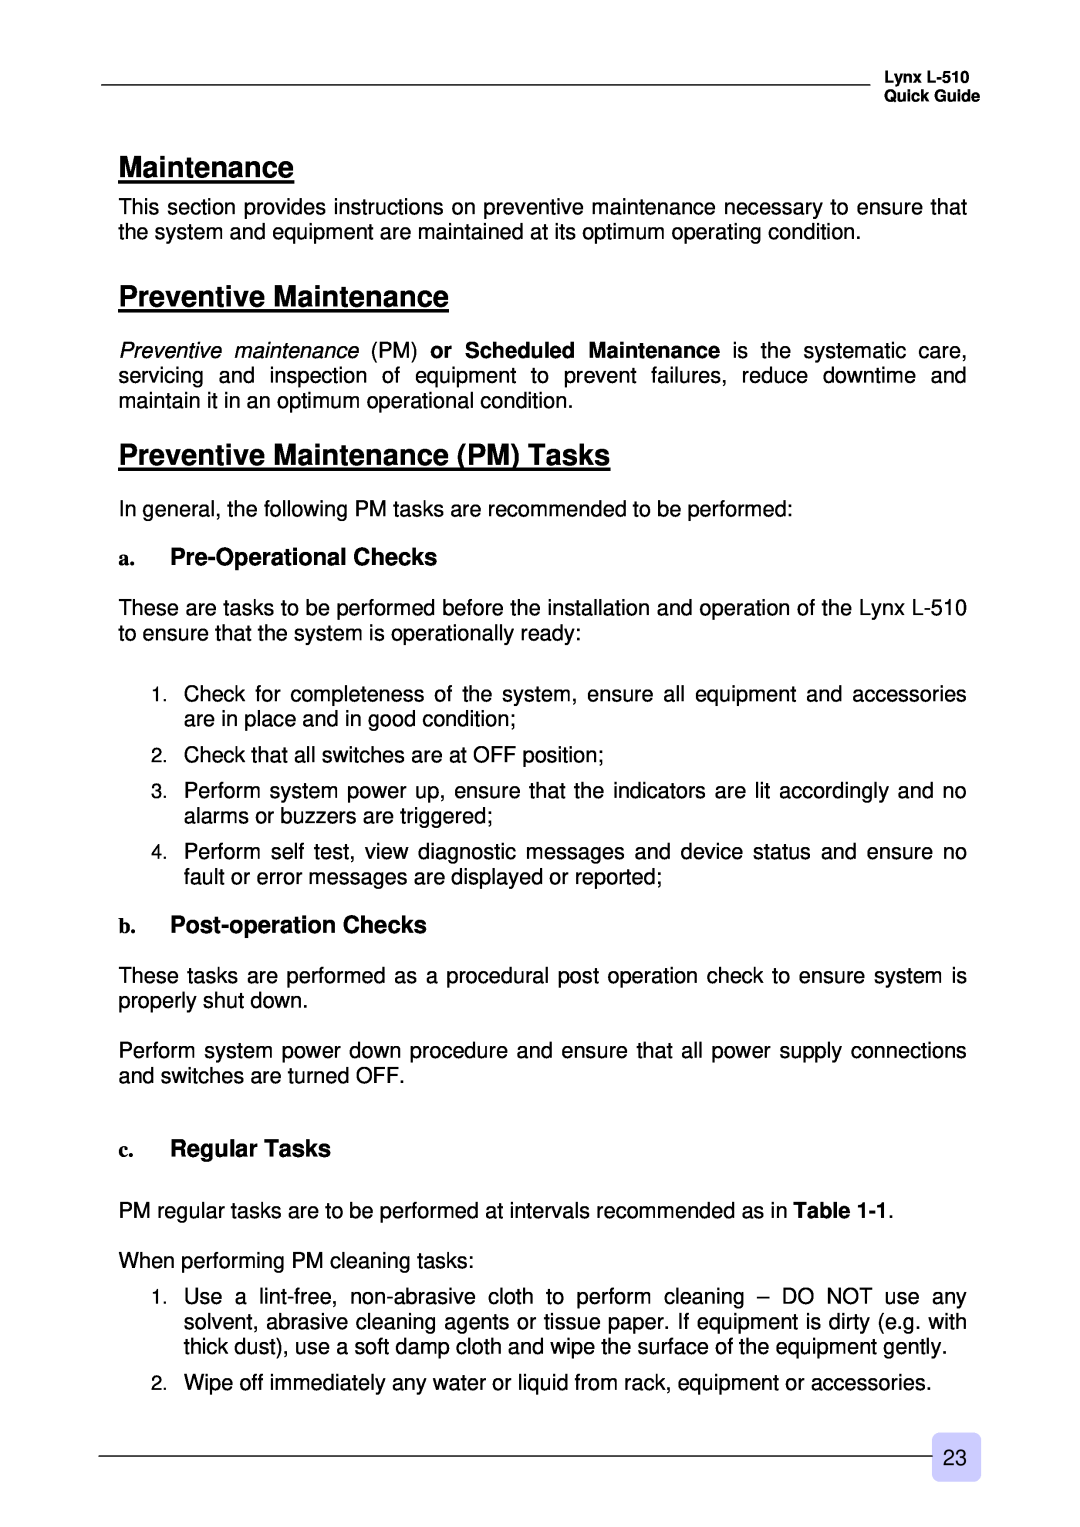 3Com Lynx L-510 warranty Preventive Maintenance PM Tasks, a. Pre-Operational Checks, b. Post-operation Checks 